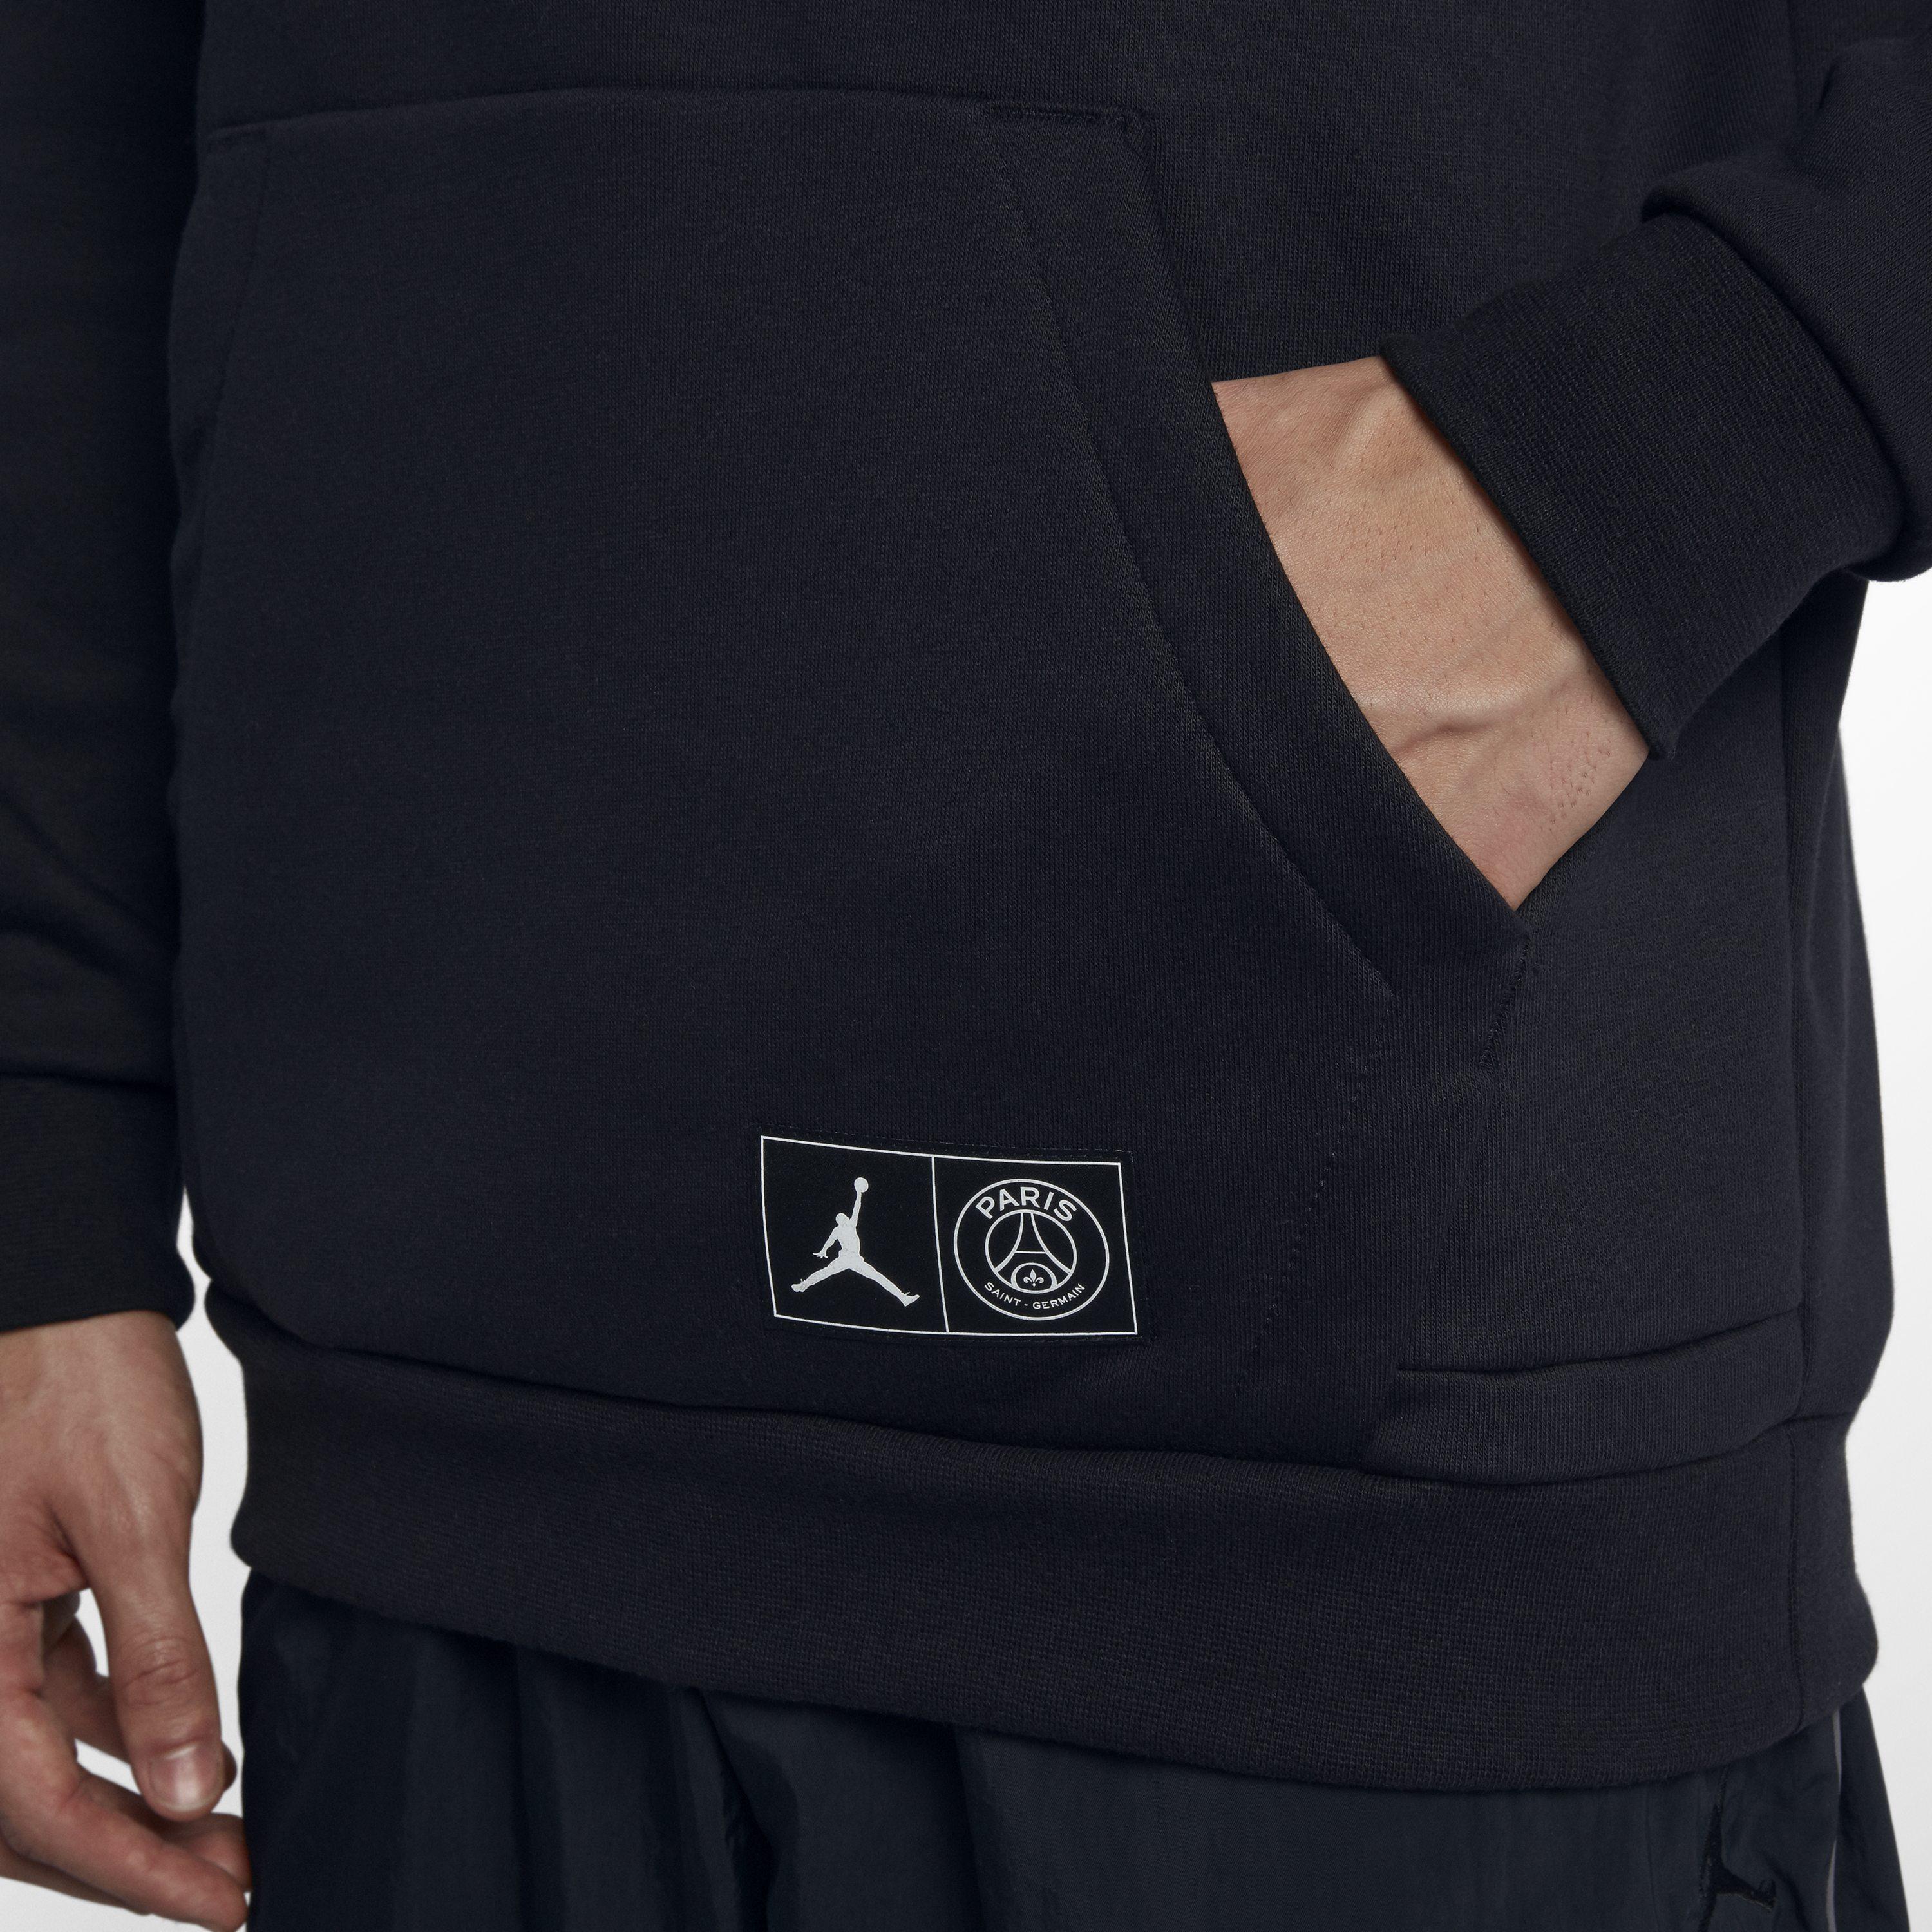 Nike Paris Saint-germain Jumpman Pullover Hoodie in Black for Men - Lyst